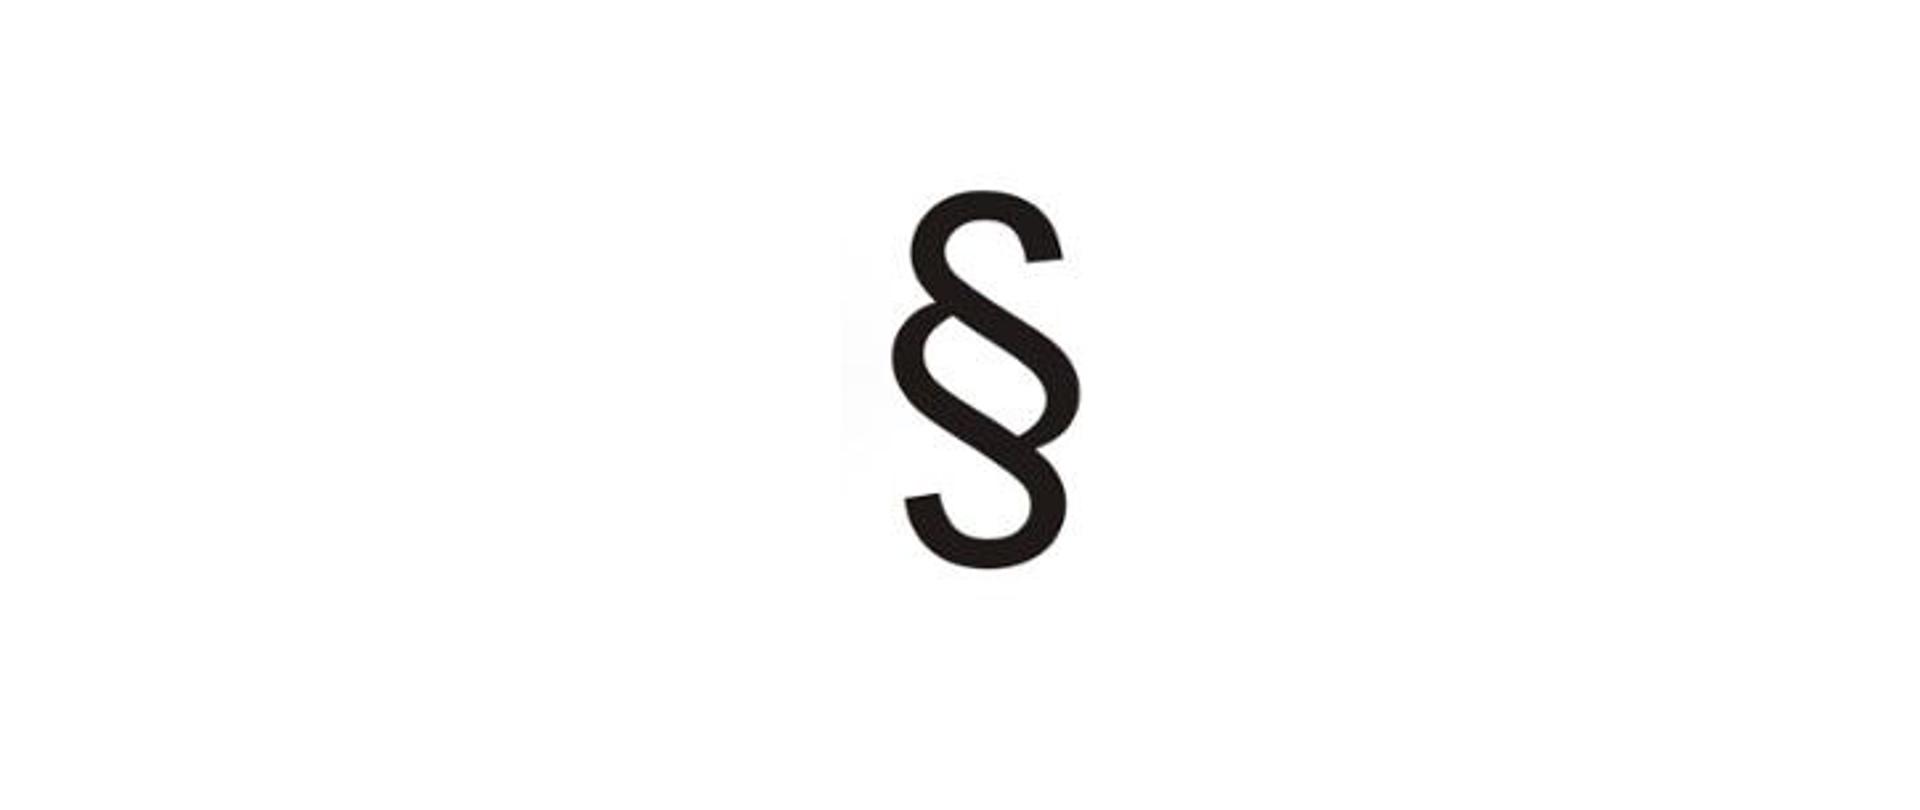 Na zdjęciu widać nachodzące na siebie dwie linie przypominające litery S.